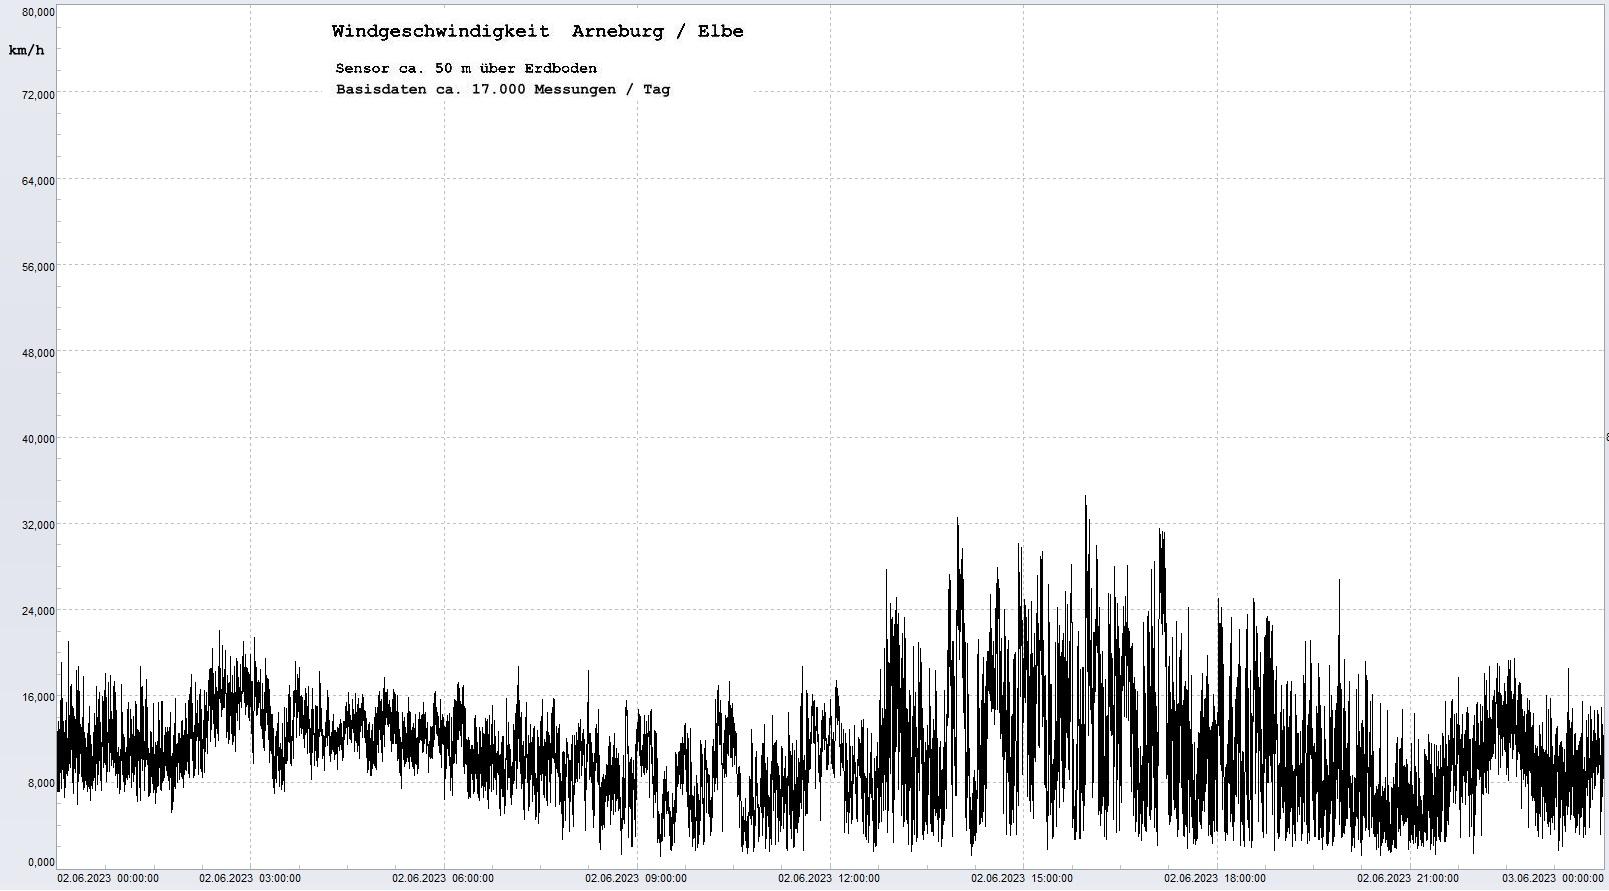 Arneburg Tages-Diagramm Winddaten, 02.06.2023
  Diagramm, Sensor auf Gebäude, ca. 50 m über Erdboden, Basis: 5s-Aufzeichnung